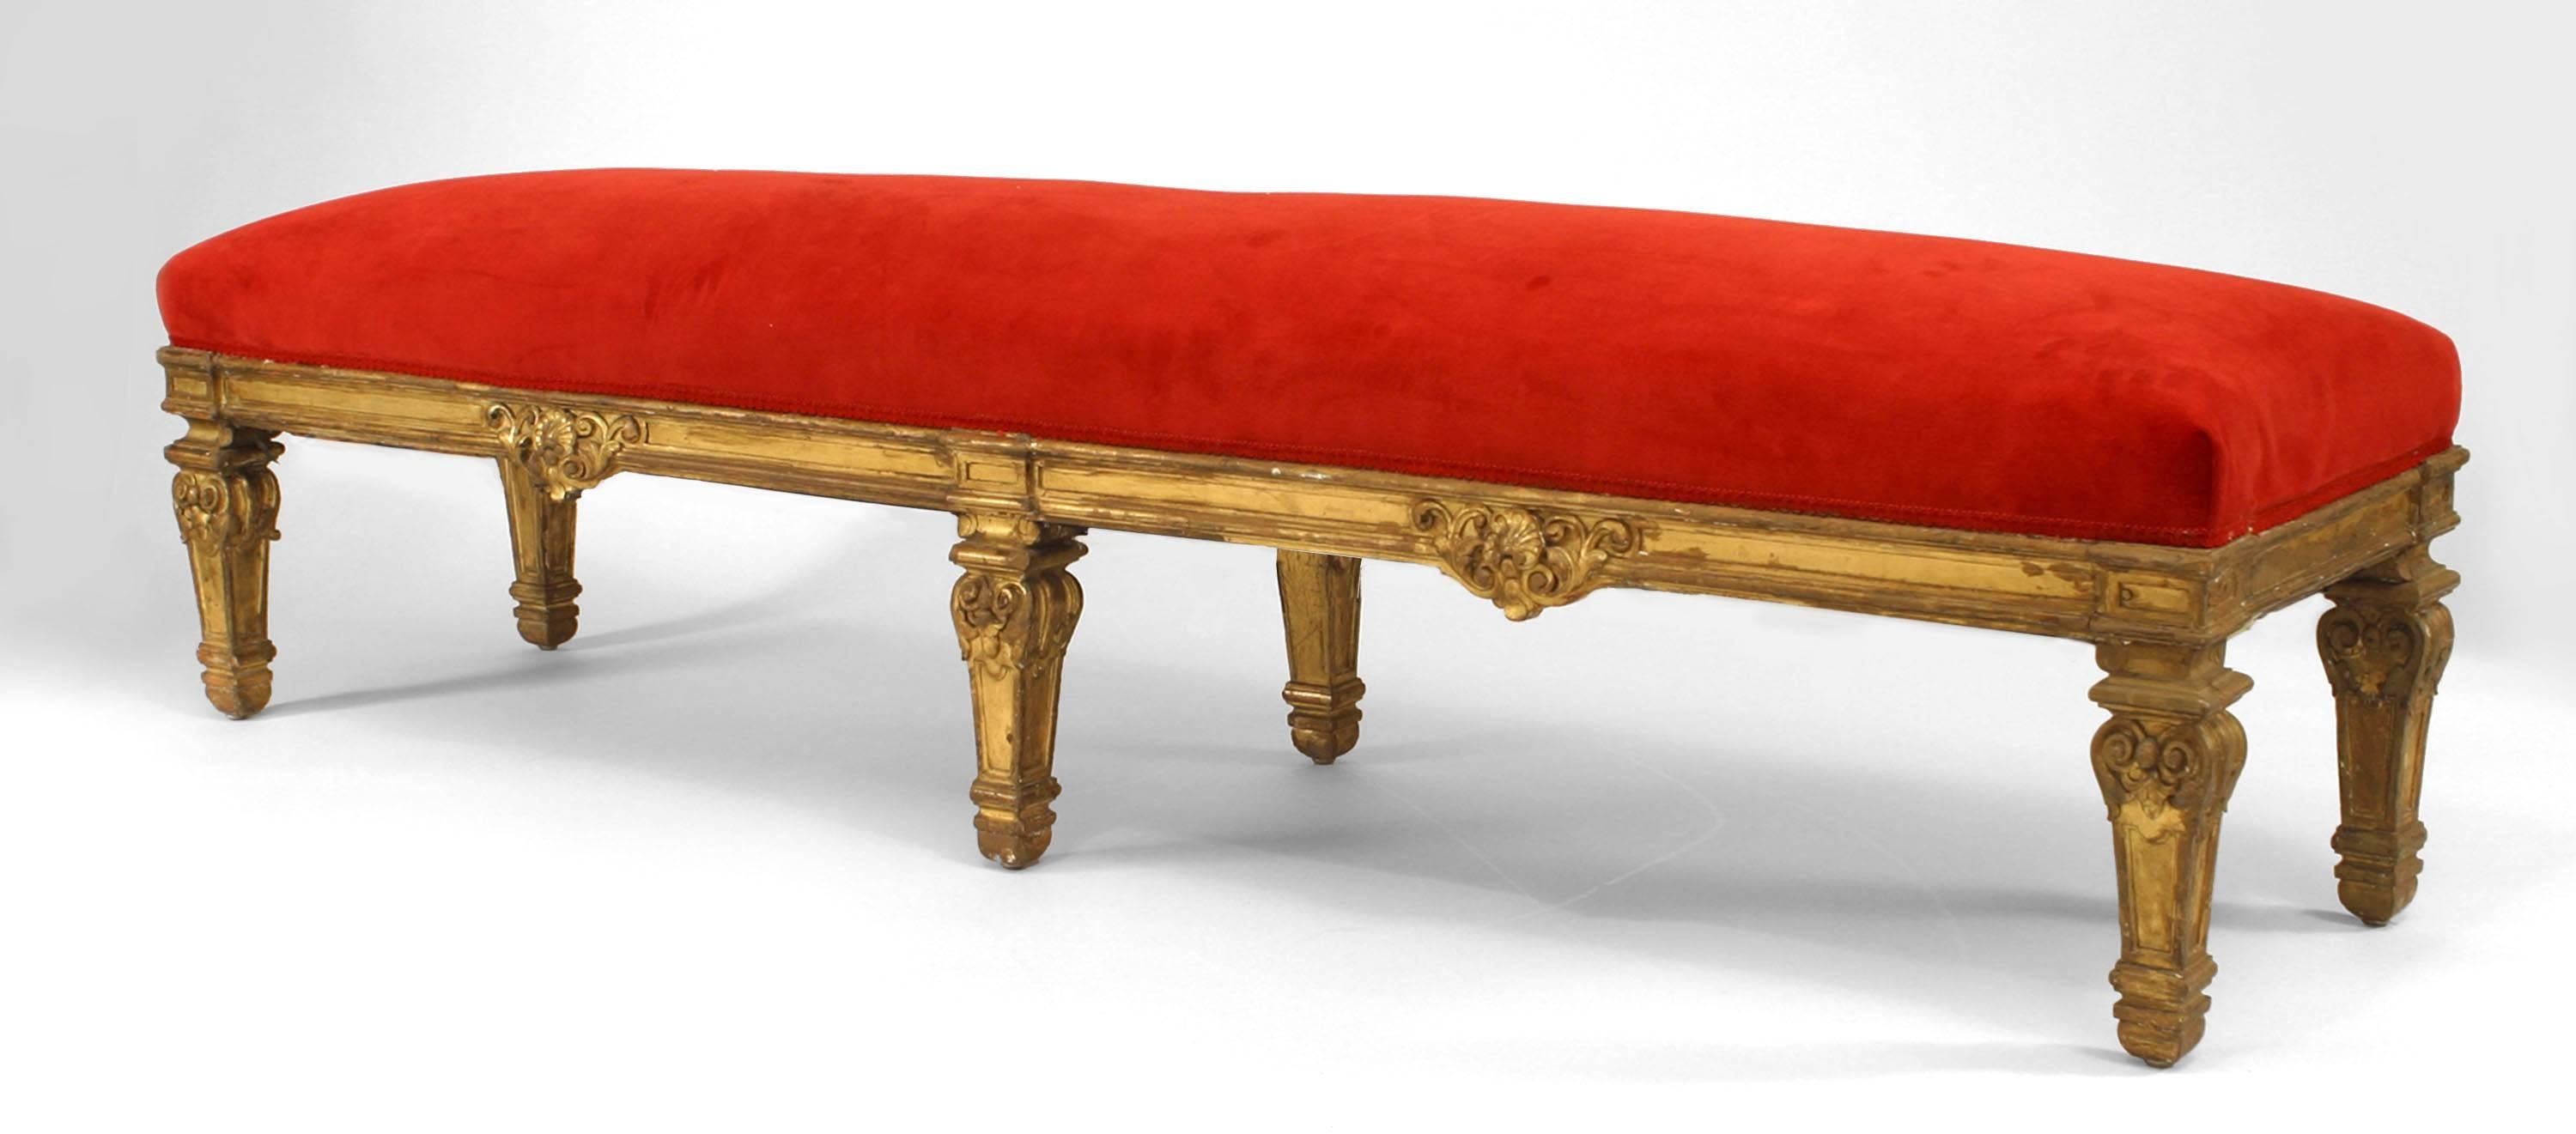 Paire de bancs en bois sculpté et doré de style Louis XIV (19ème siècle) à 6 pieds et assise tapissée de velours rouge.
